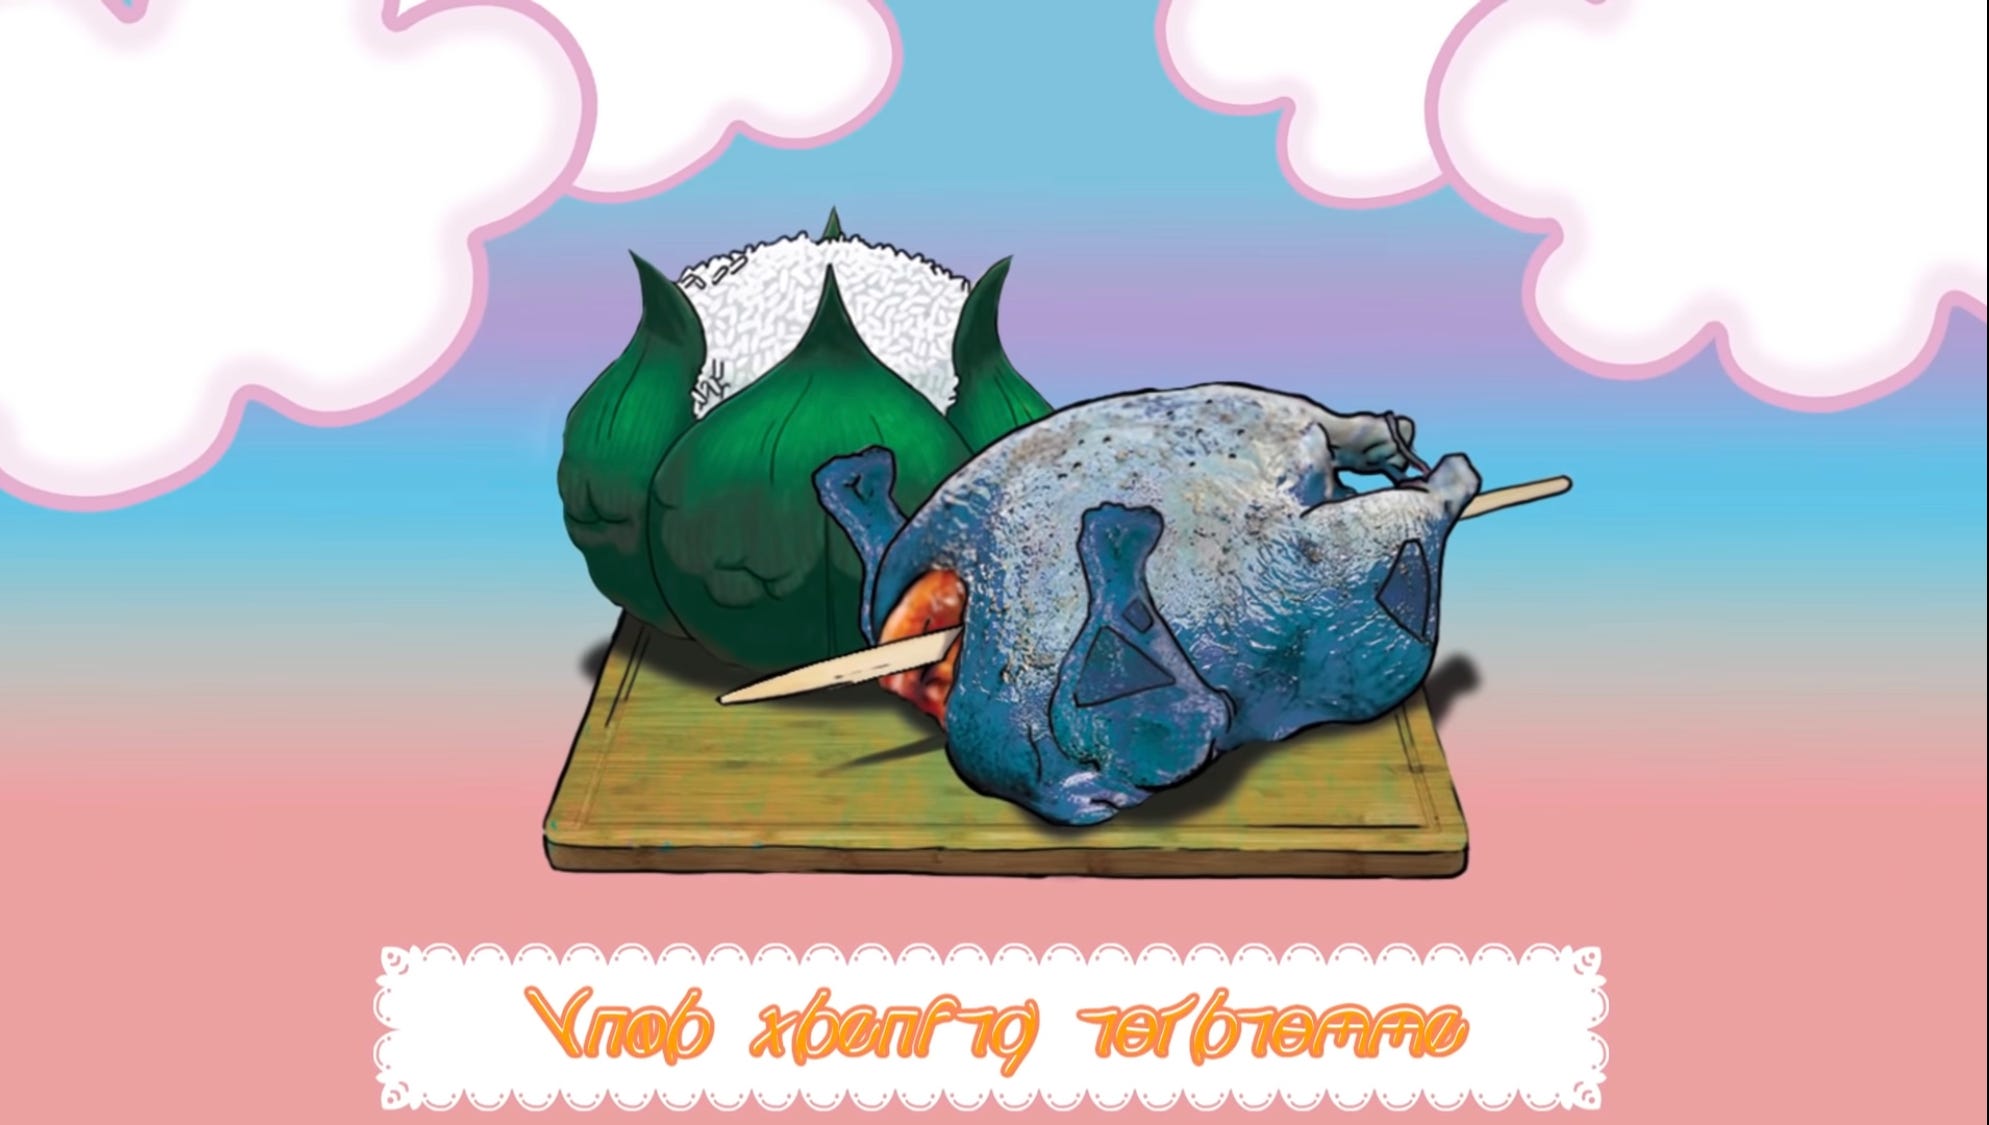 Screenshot from Pokémenu video showing roasted bulbasaur meal art.